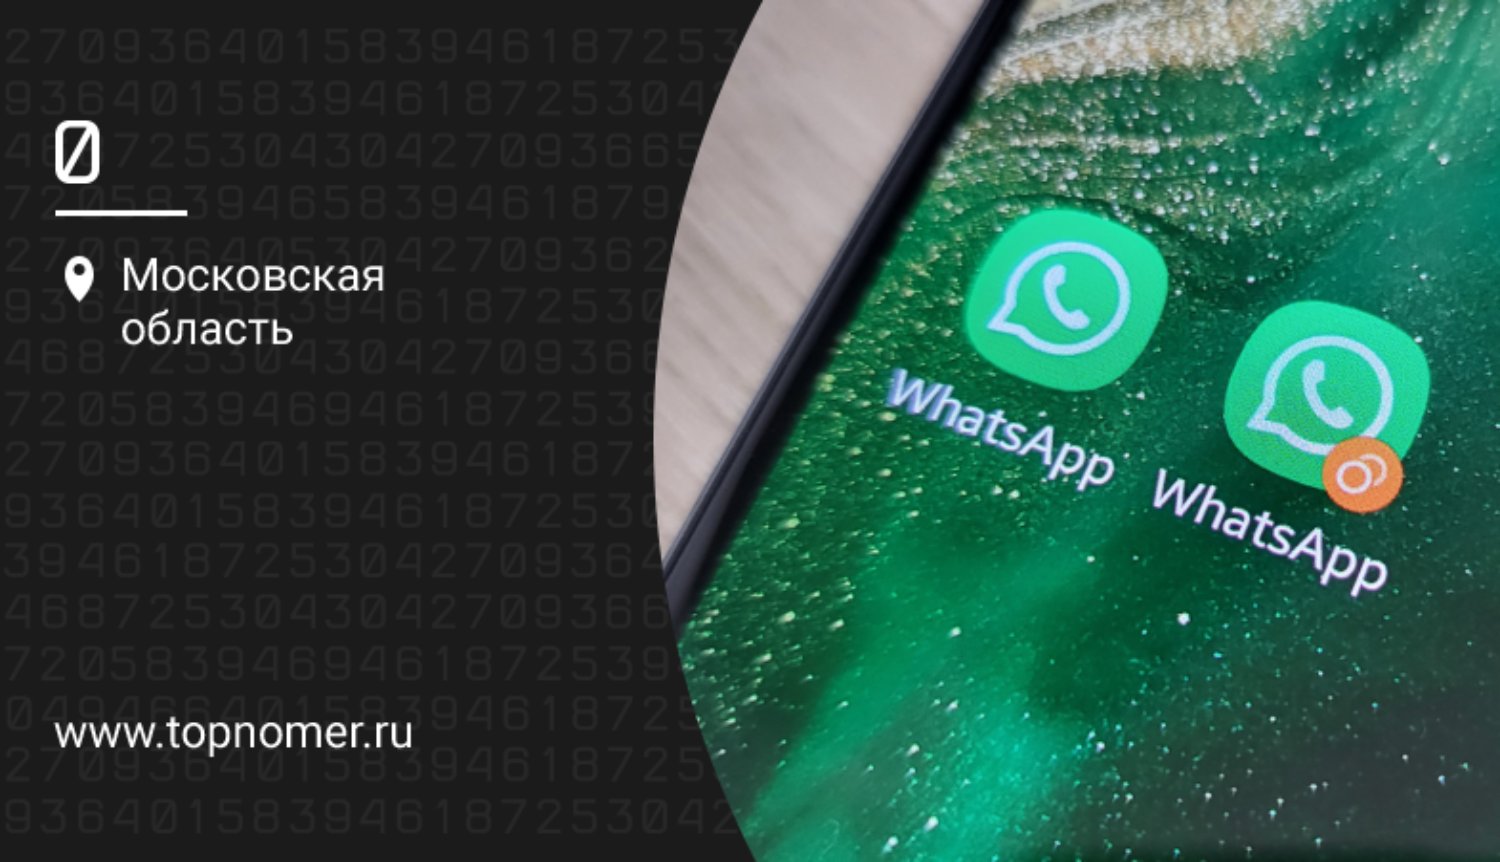 Два номера WhatsApp на телефоне Samsung с двумя SIM-картами и как изменить WhatsApp на другой номер на телефоне с двумя SIM-картами